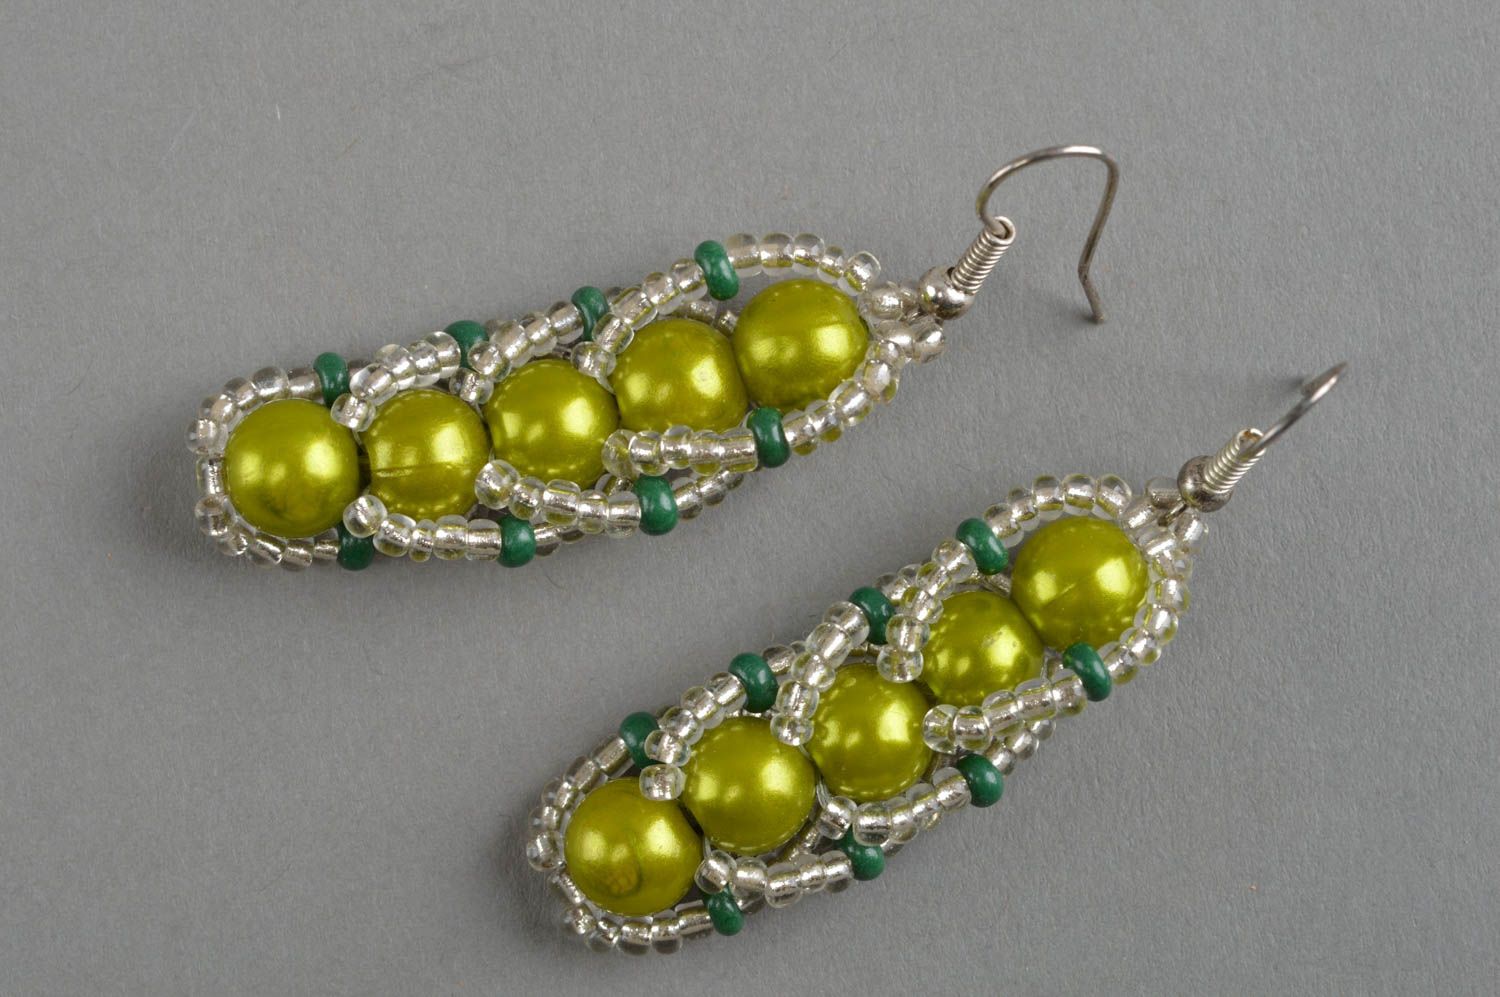 Stylish handmade beaded earrings designer earrings woven of beads gift ideas photo 2